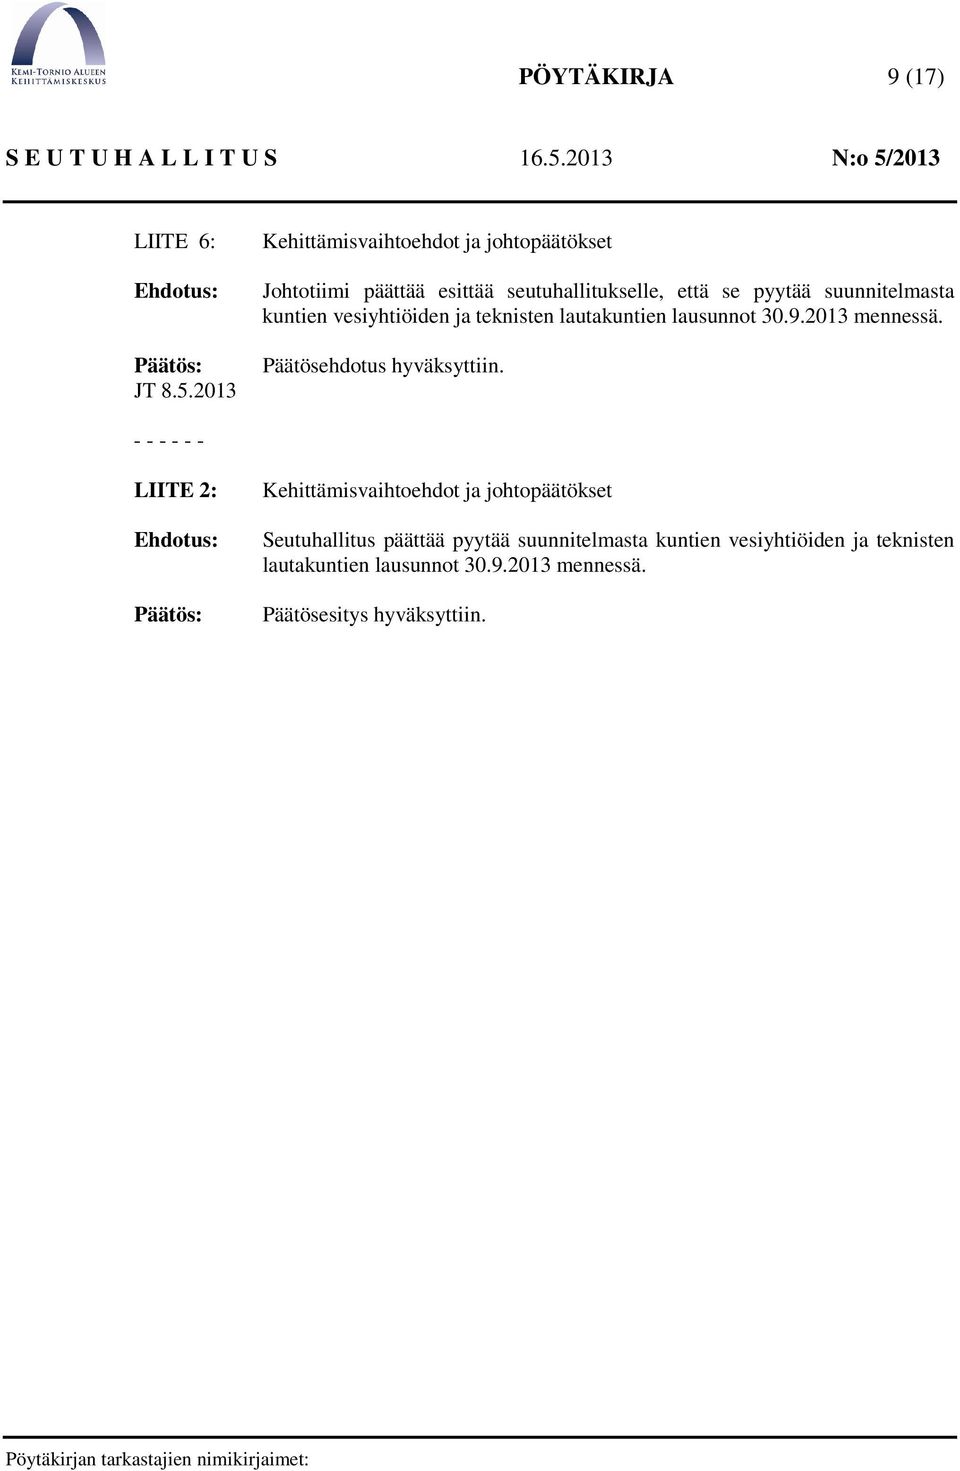 suunnitelmasta kuntien vesiyhtiöiden ja teknisten lautakuntien lausunnot 30.9.2013 mennessä.